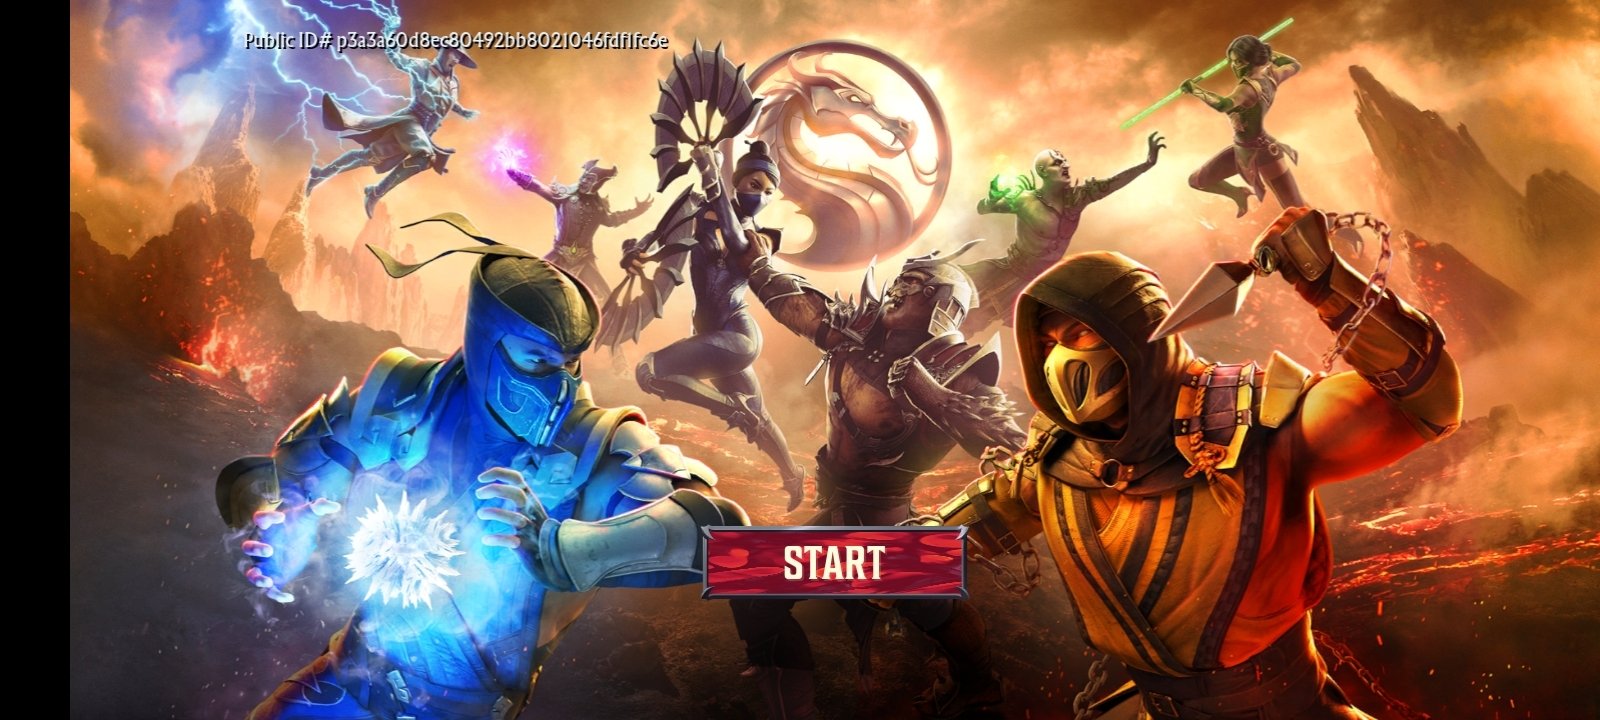 Mortal kombat 11 download apk